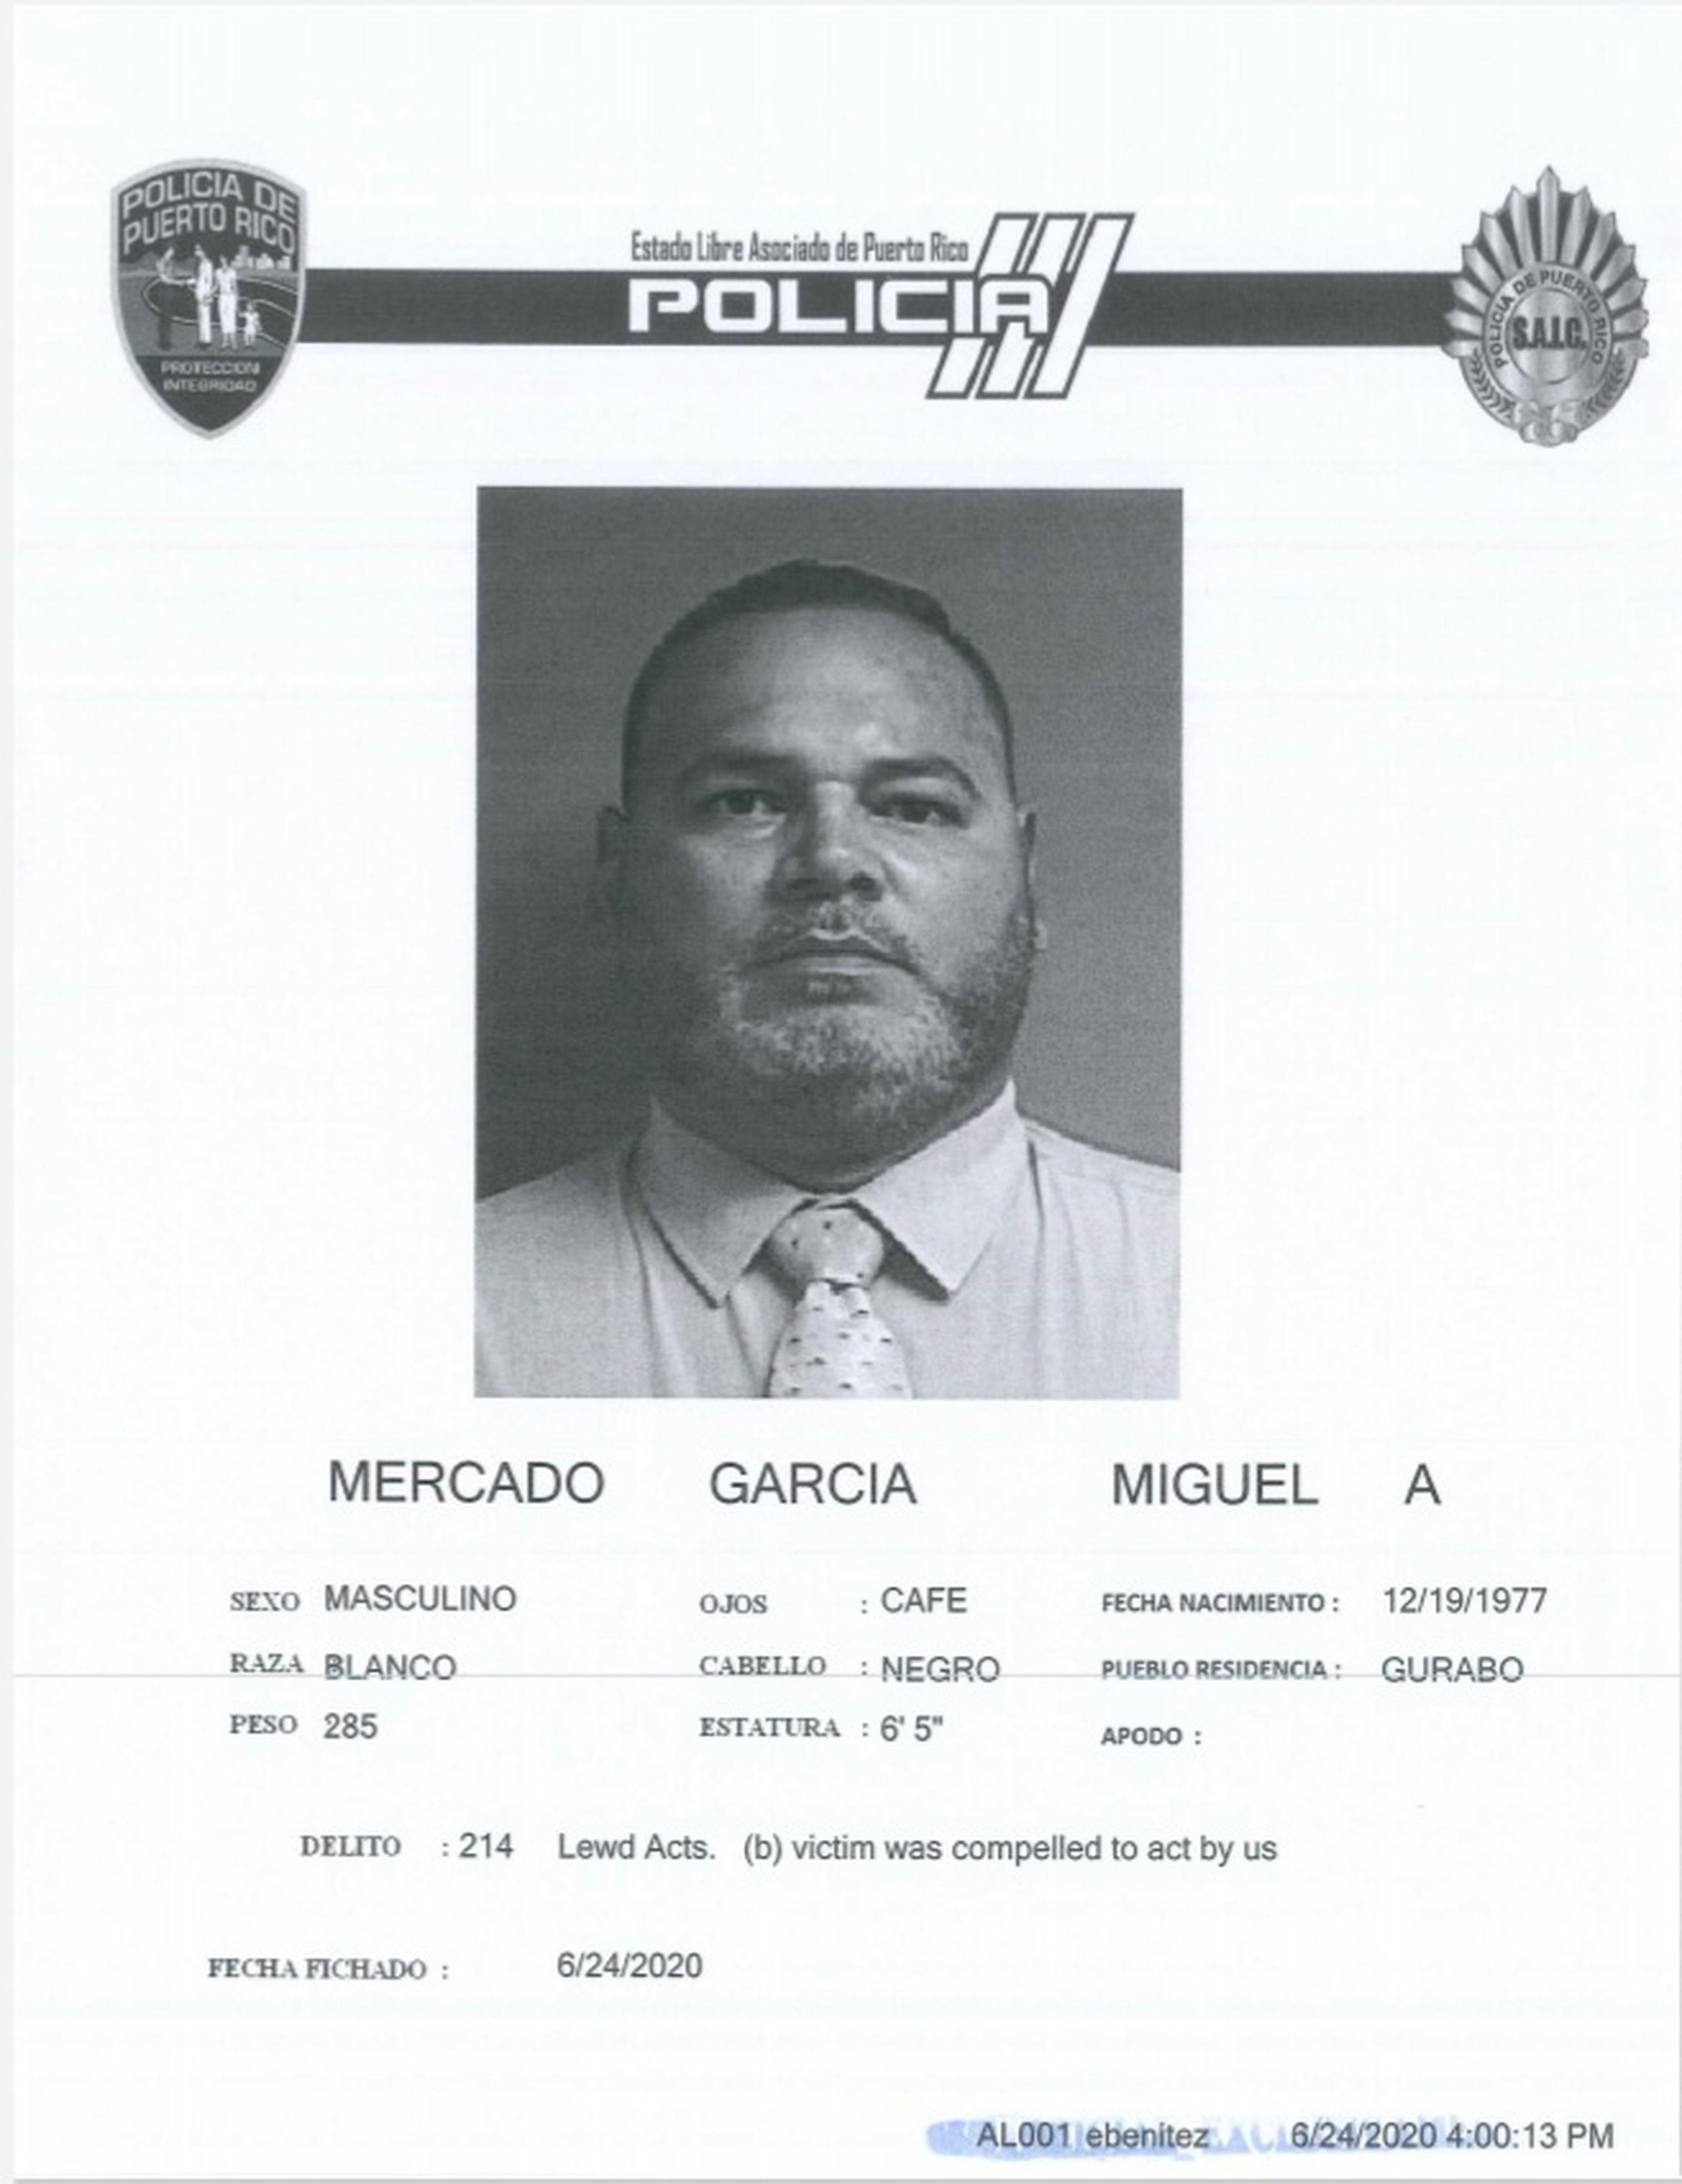 El policía Miguel A. Mercado García fue acusado por presuntamente cometer actos lascivos contra una agente el 27 de marzo del 2019, en la Comandancia de Área de Caguas.